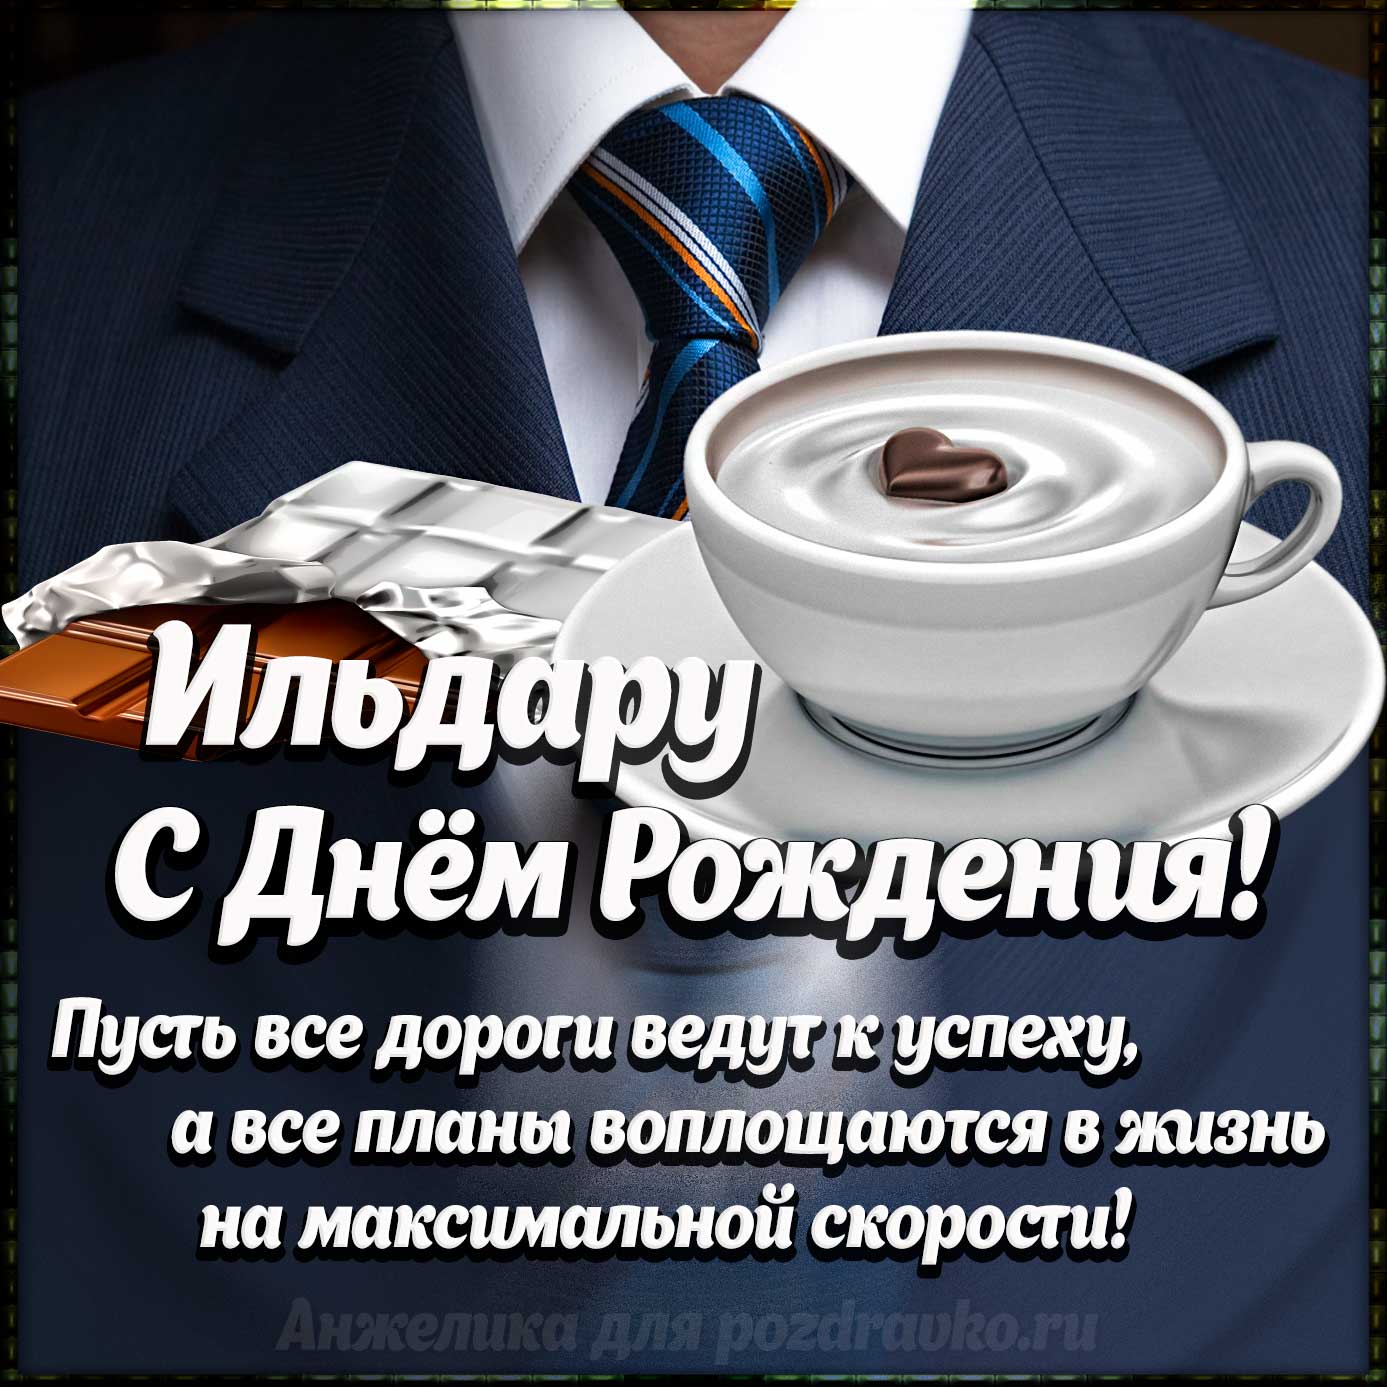 Открытка - Ильдару с Днем Рождения с галстуком, кофе и пожеланием. Скачать бесплатно или отправить картинку.